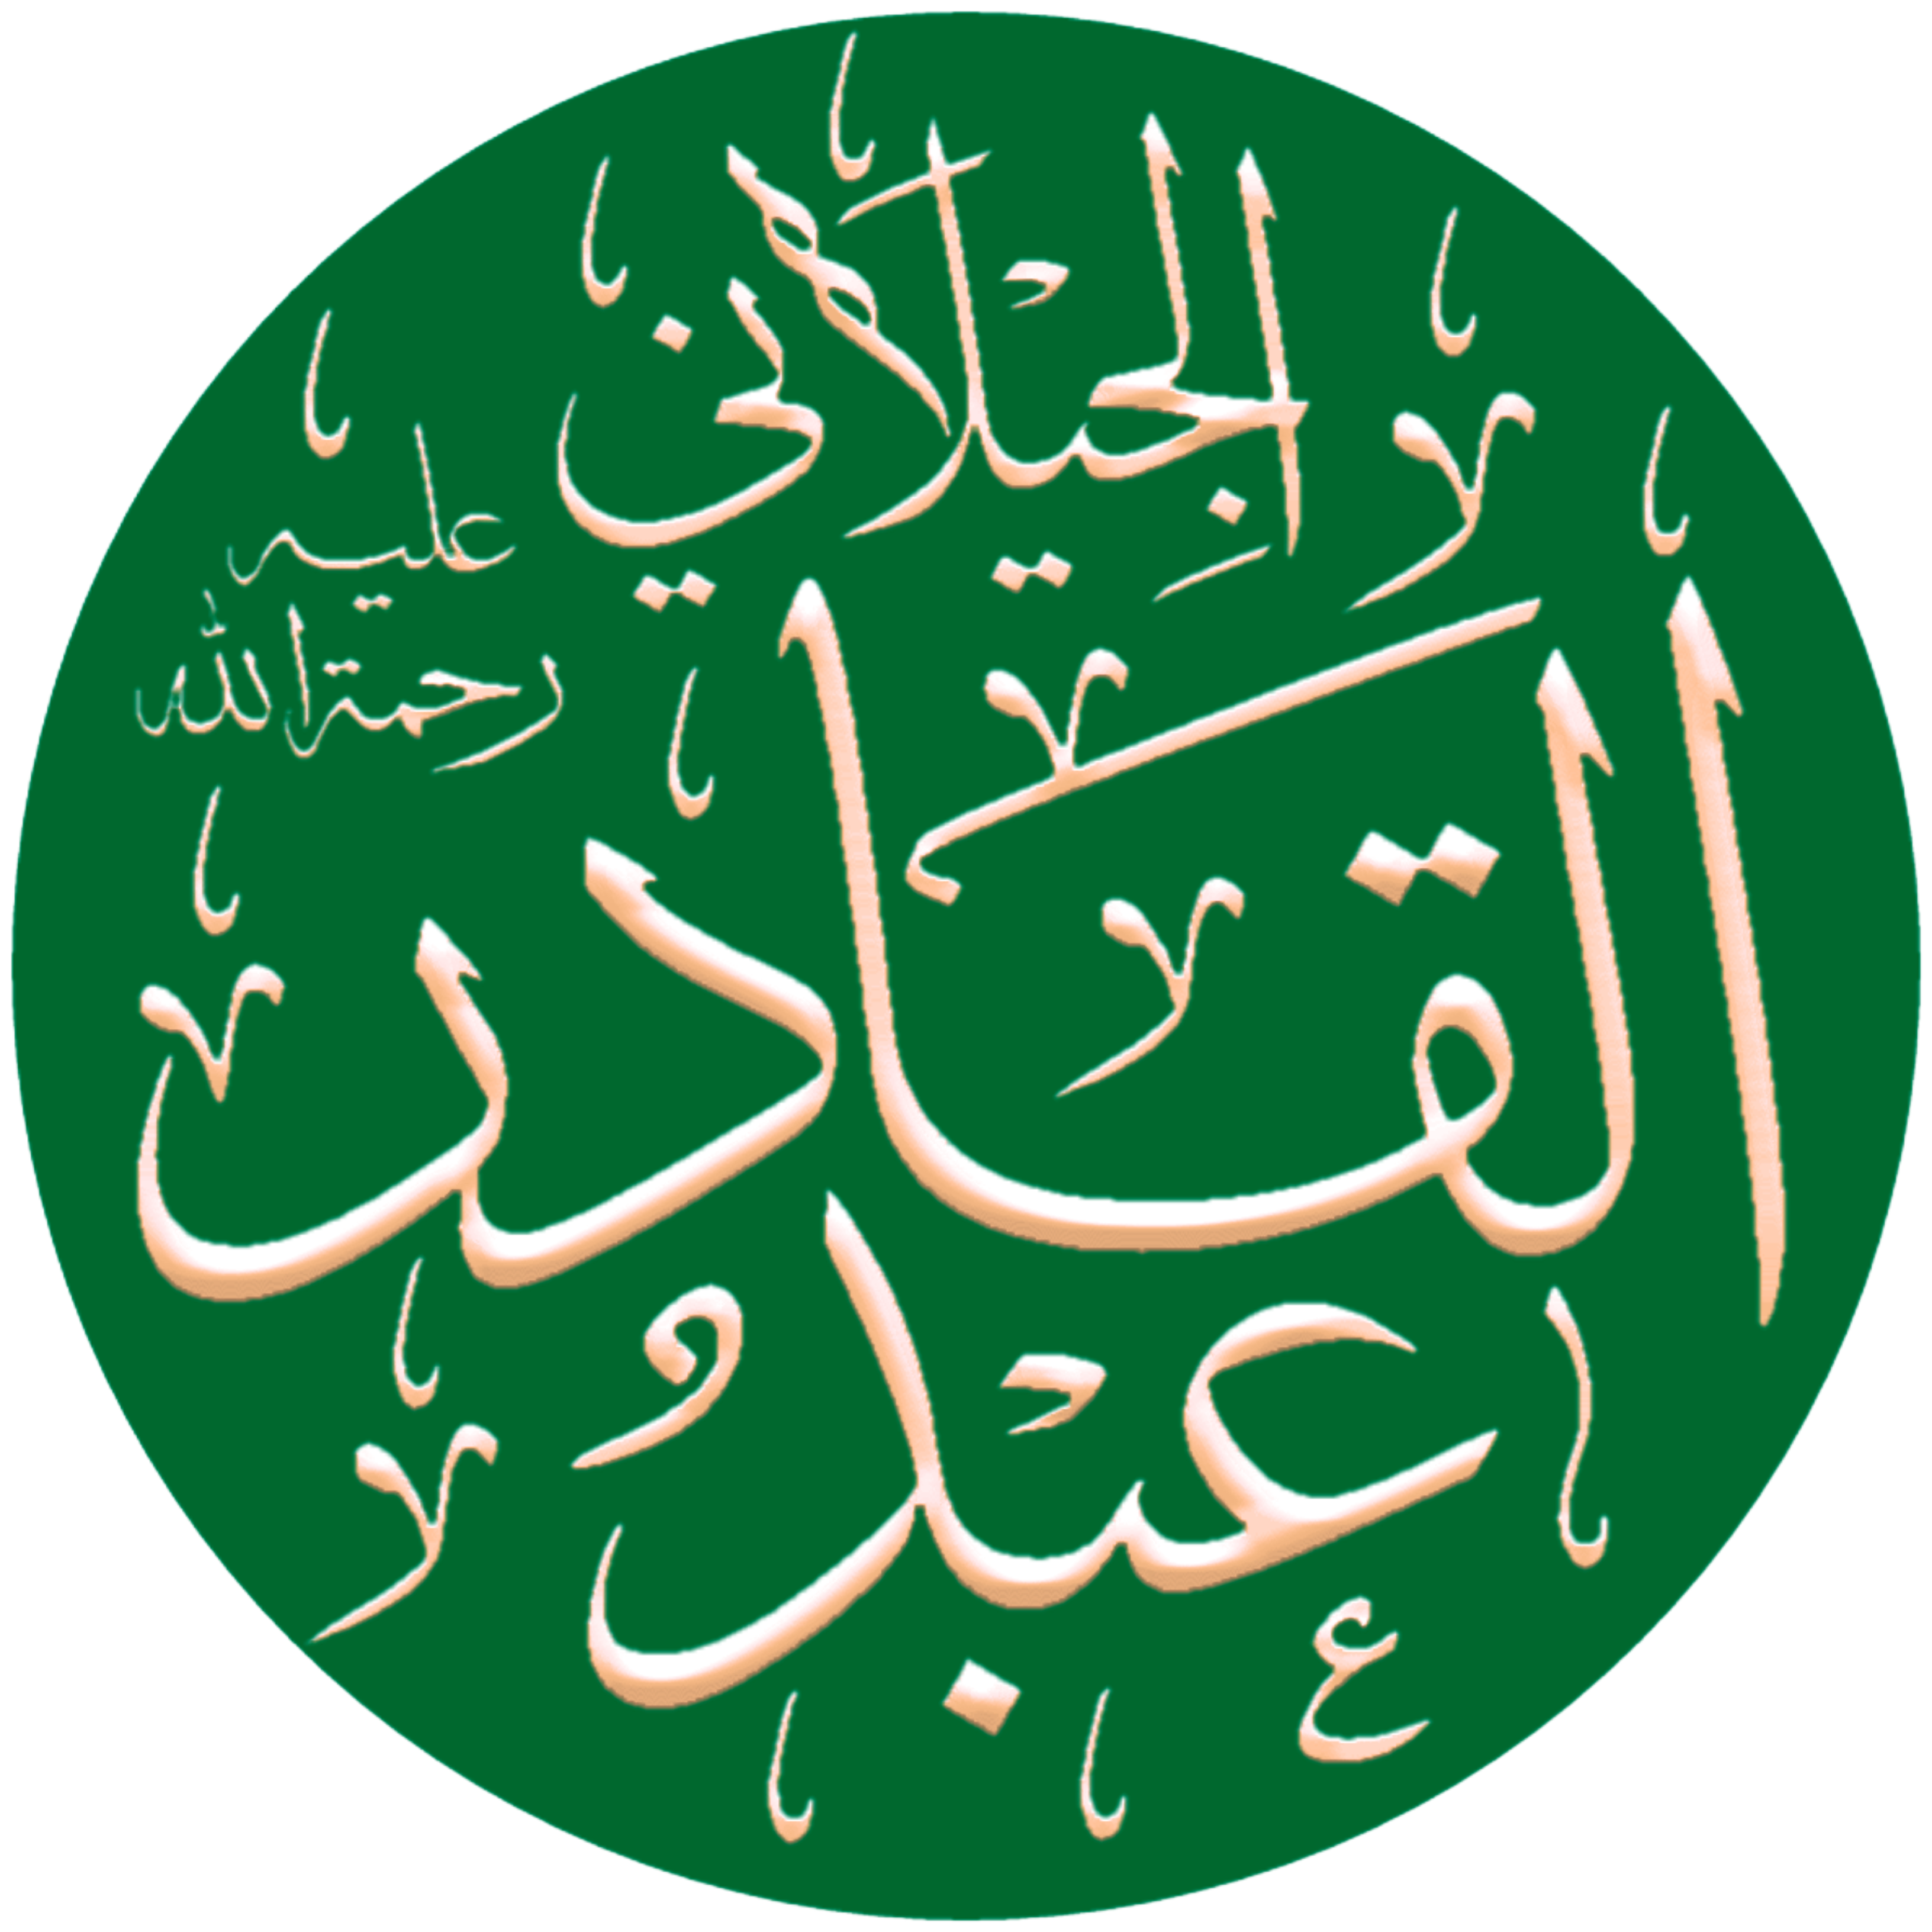 Abdul_Qadir_Gilani_(calligraphic,_transparent_background)